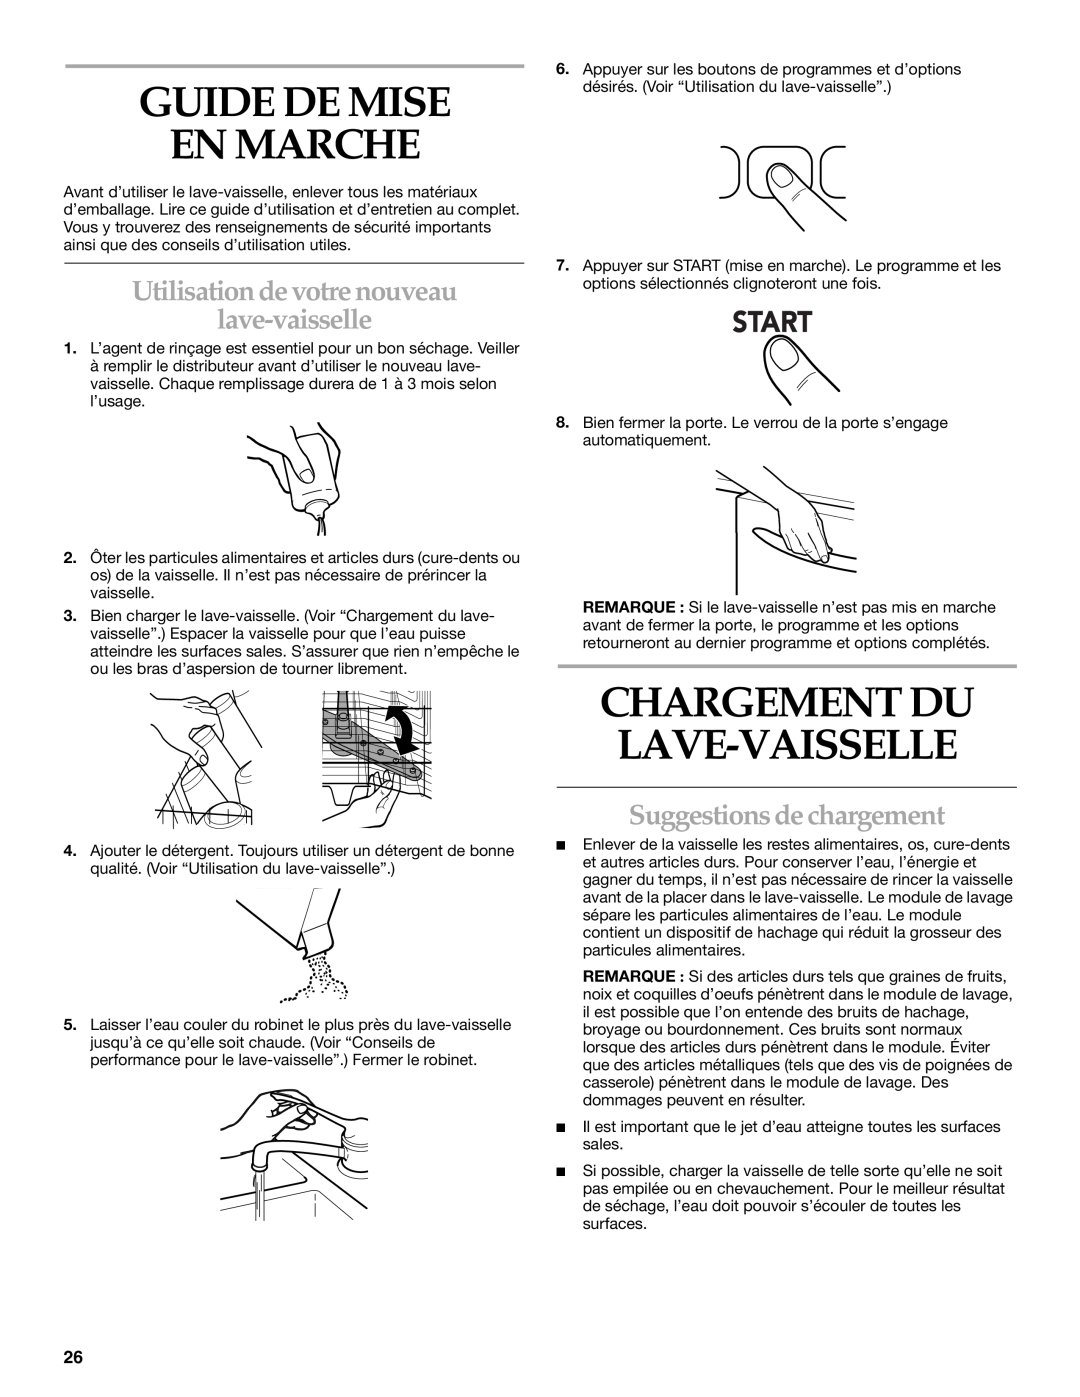 KitchenAid KUDS01VM manual Guide De Mise En Marche, Utilisation de votre nouveau lave-vaisselle, Suggestions de chargement 